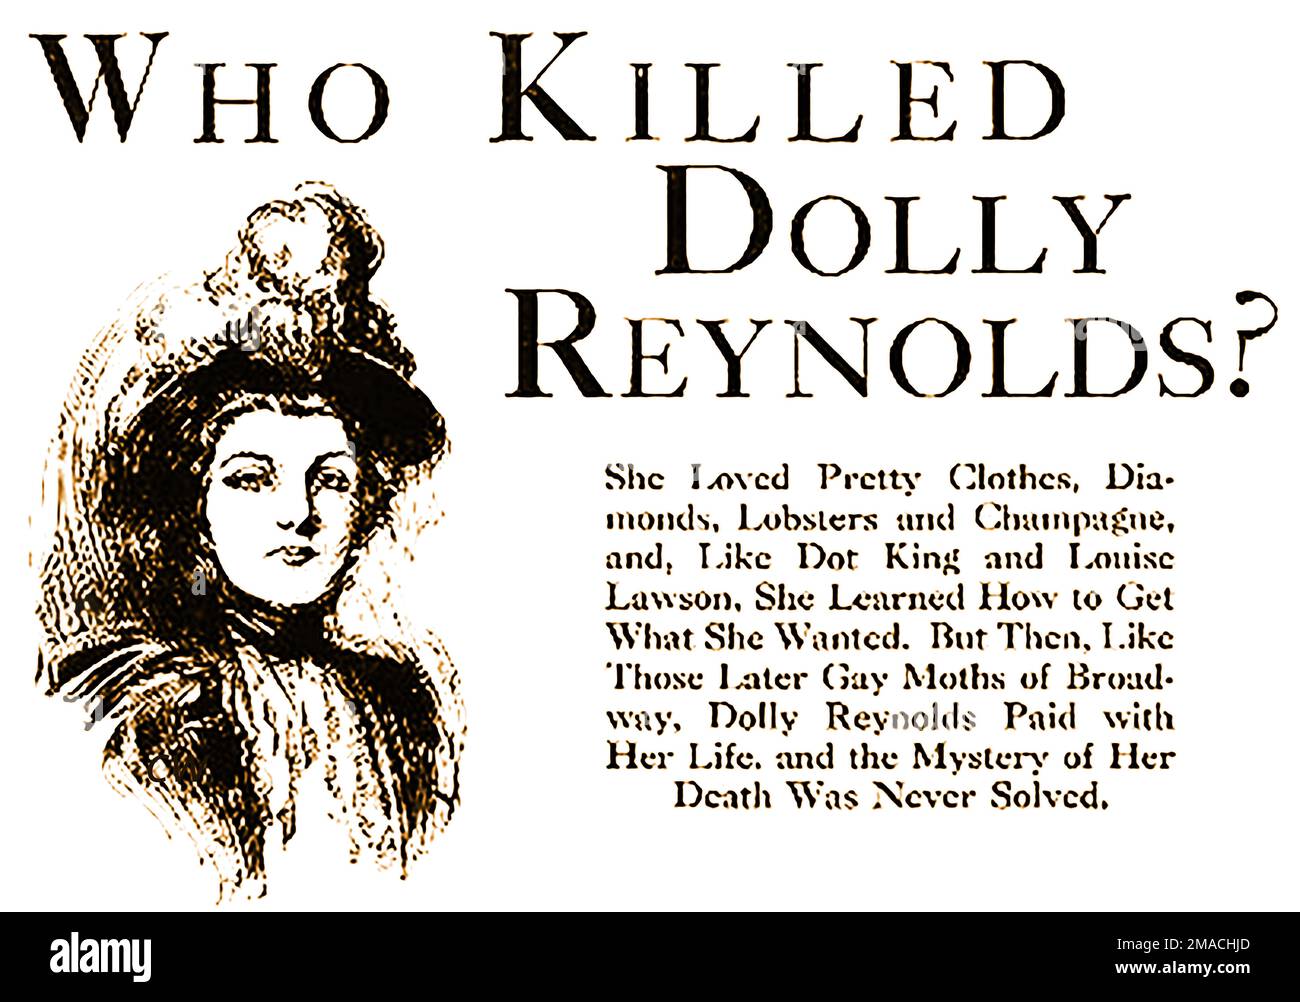 PORTRAIT DE DOLLY REYNOLDS - dentiste, le Dr Samuel J Kennedy a été impliqué dans l'affaire de longue date du meurtre de Dolly Reynolds aux États-Unis. La femme qui s'était inscrite sous le nom d'"E. Maxwell et sa femme au Grand Hôtel de New York a été trouvée volée et morte dans sa chambre par une femme de chambre sur 16 août 1898, son tueur n'a jamais été trouvé. Banque D'Images